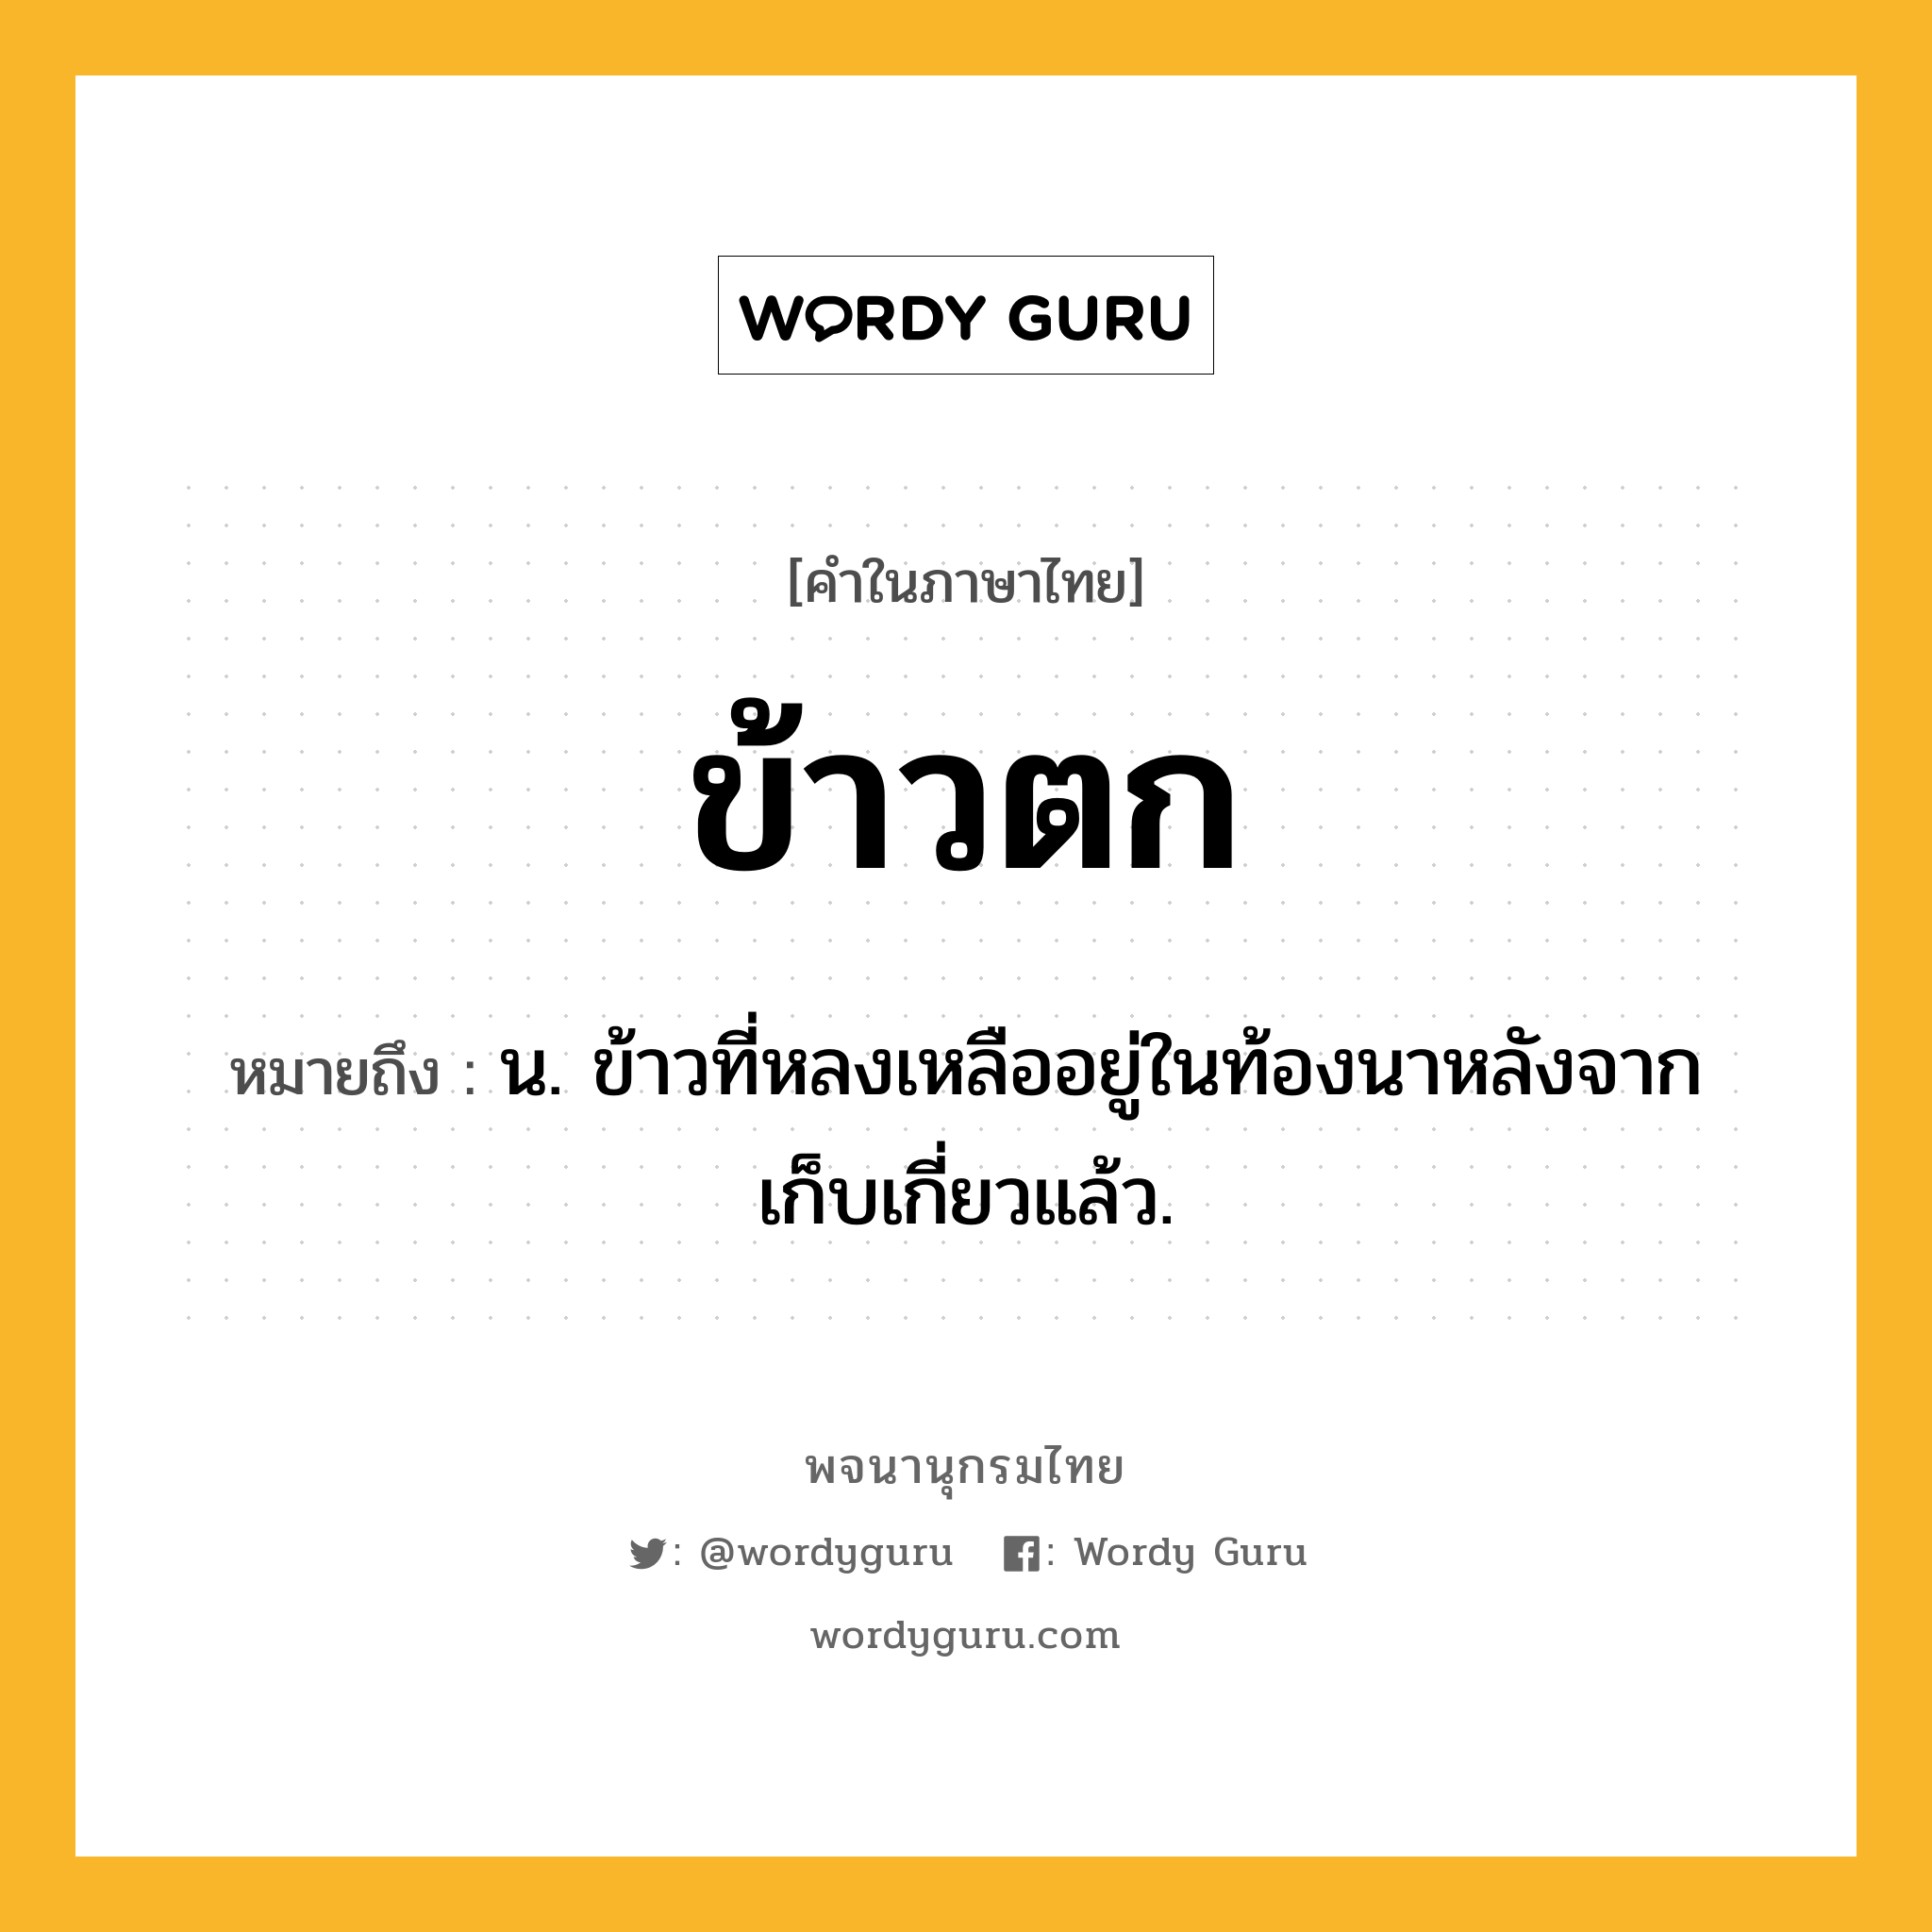 ข้าวตก ความหมาย หมายถึงอะไร?, คำในภาษาไทย ข้าวตก หมายถึง น. ข้าวที่หลงเหลืออยู่ในท้องนาหลังจากเก็บเกี่ยวแล้ว.